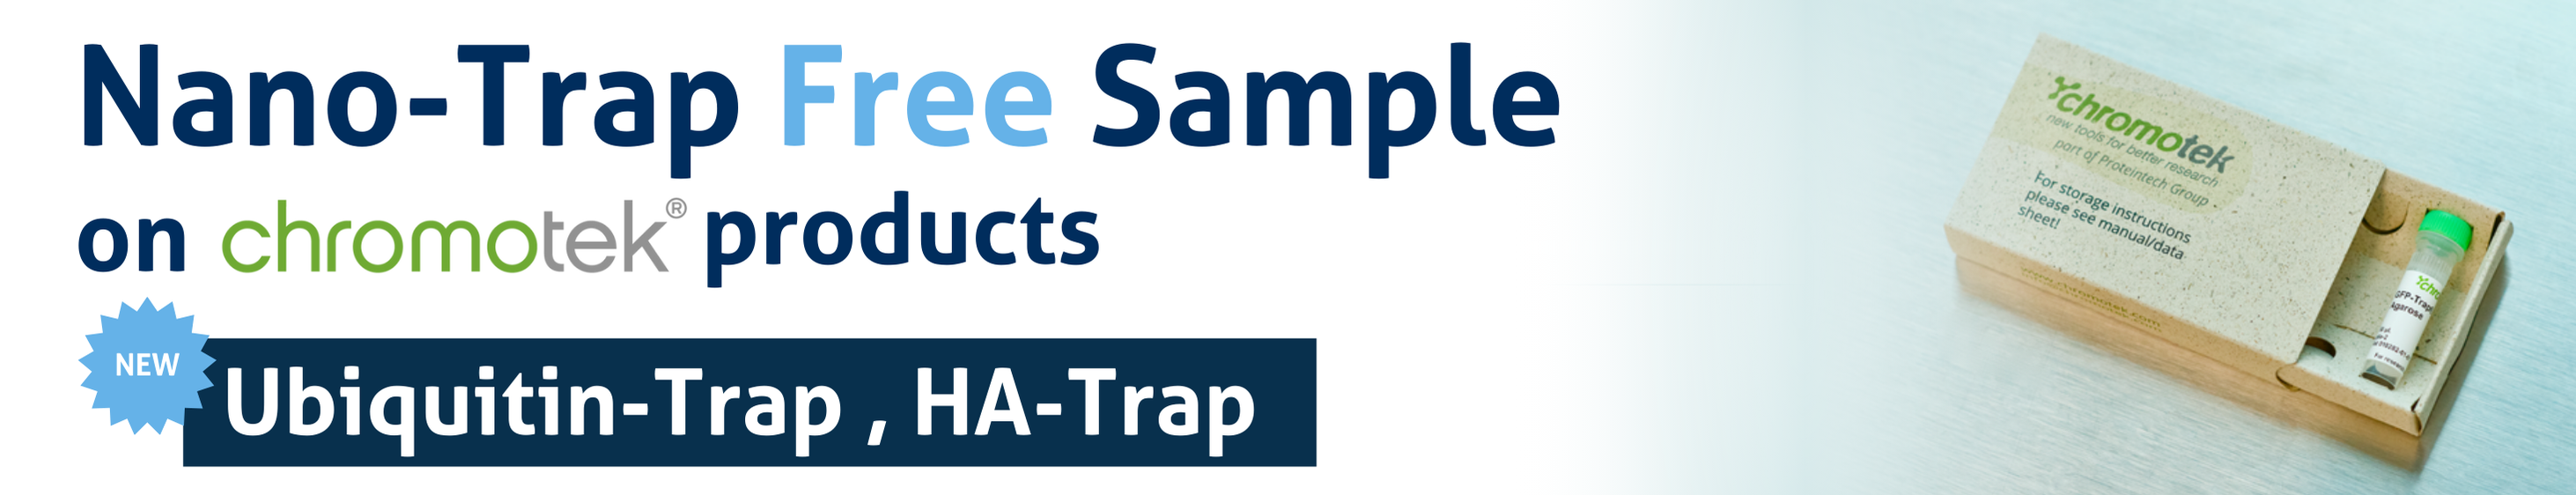 NanoTrap free sample